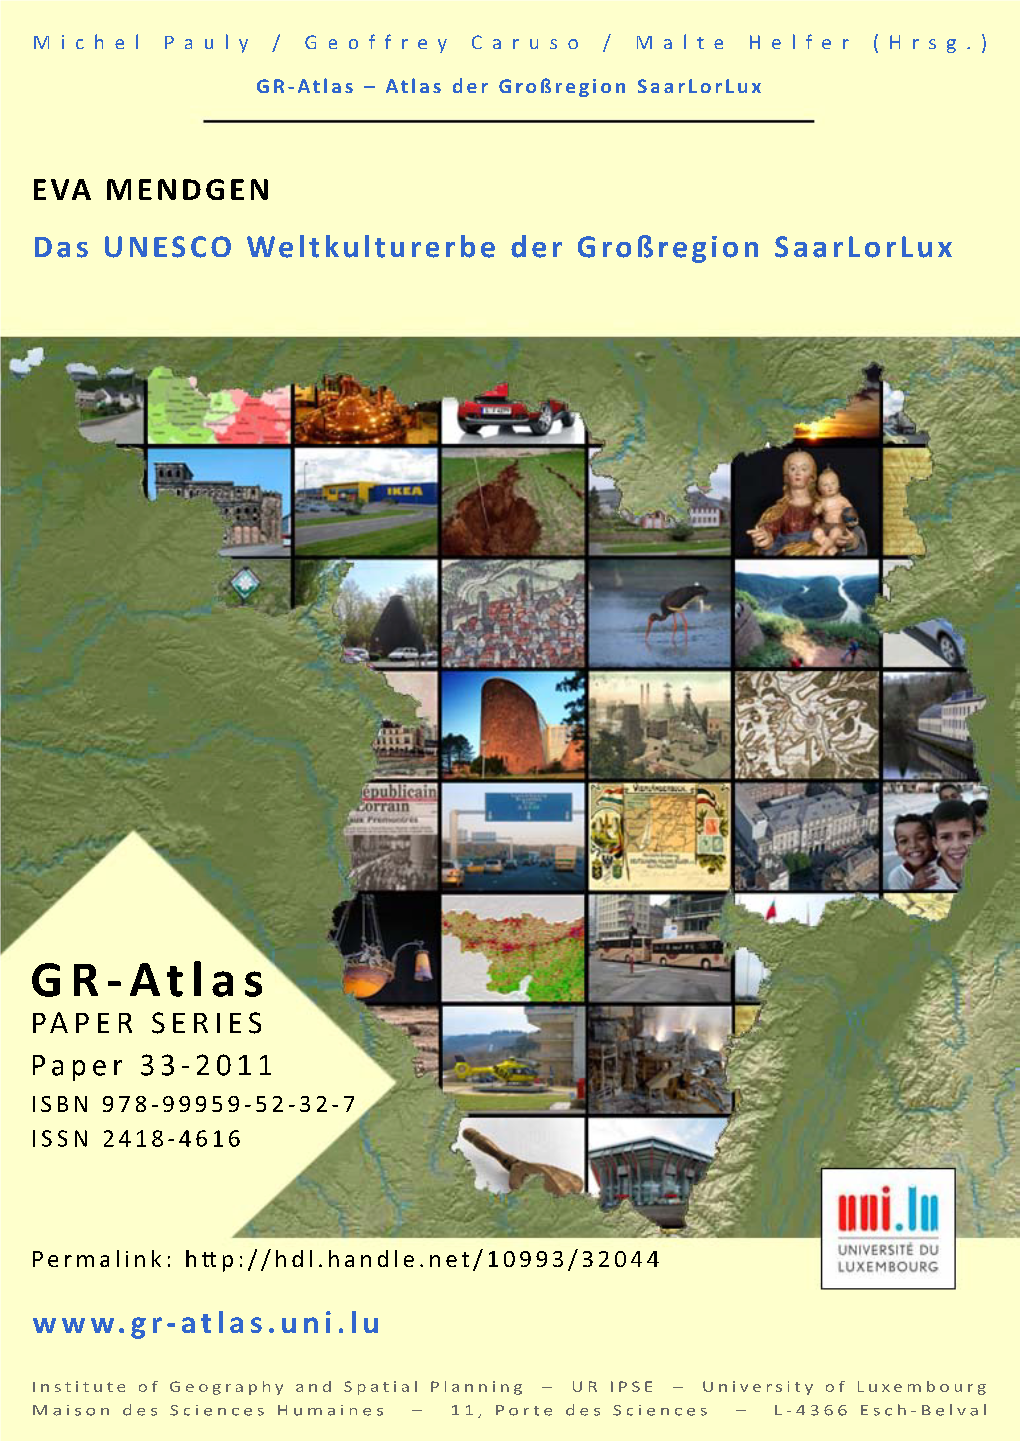 GR-Atlas, Beitrag 33: Das UNESCO Weltkulturerbe Der Großregion